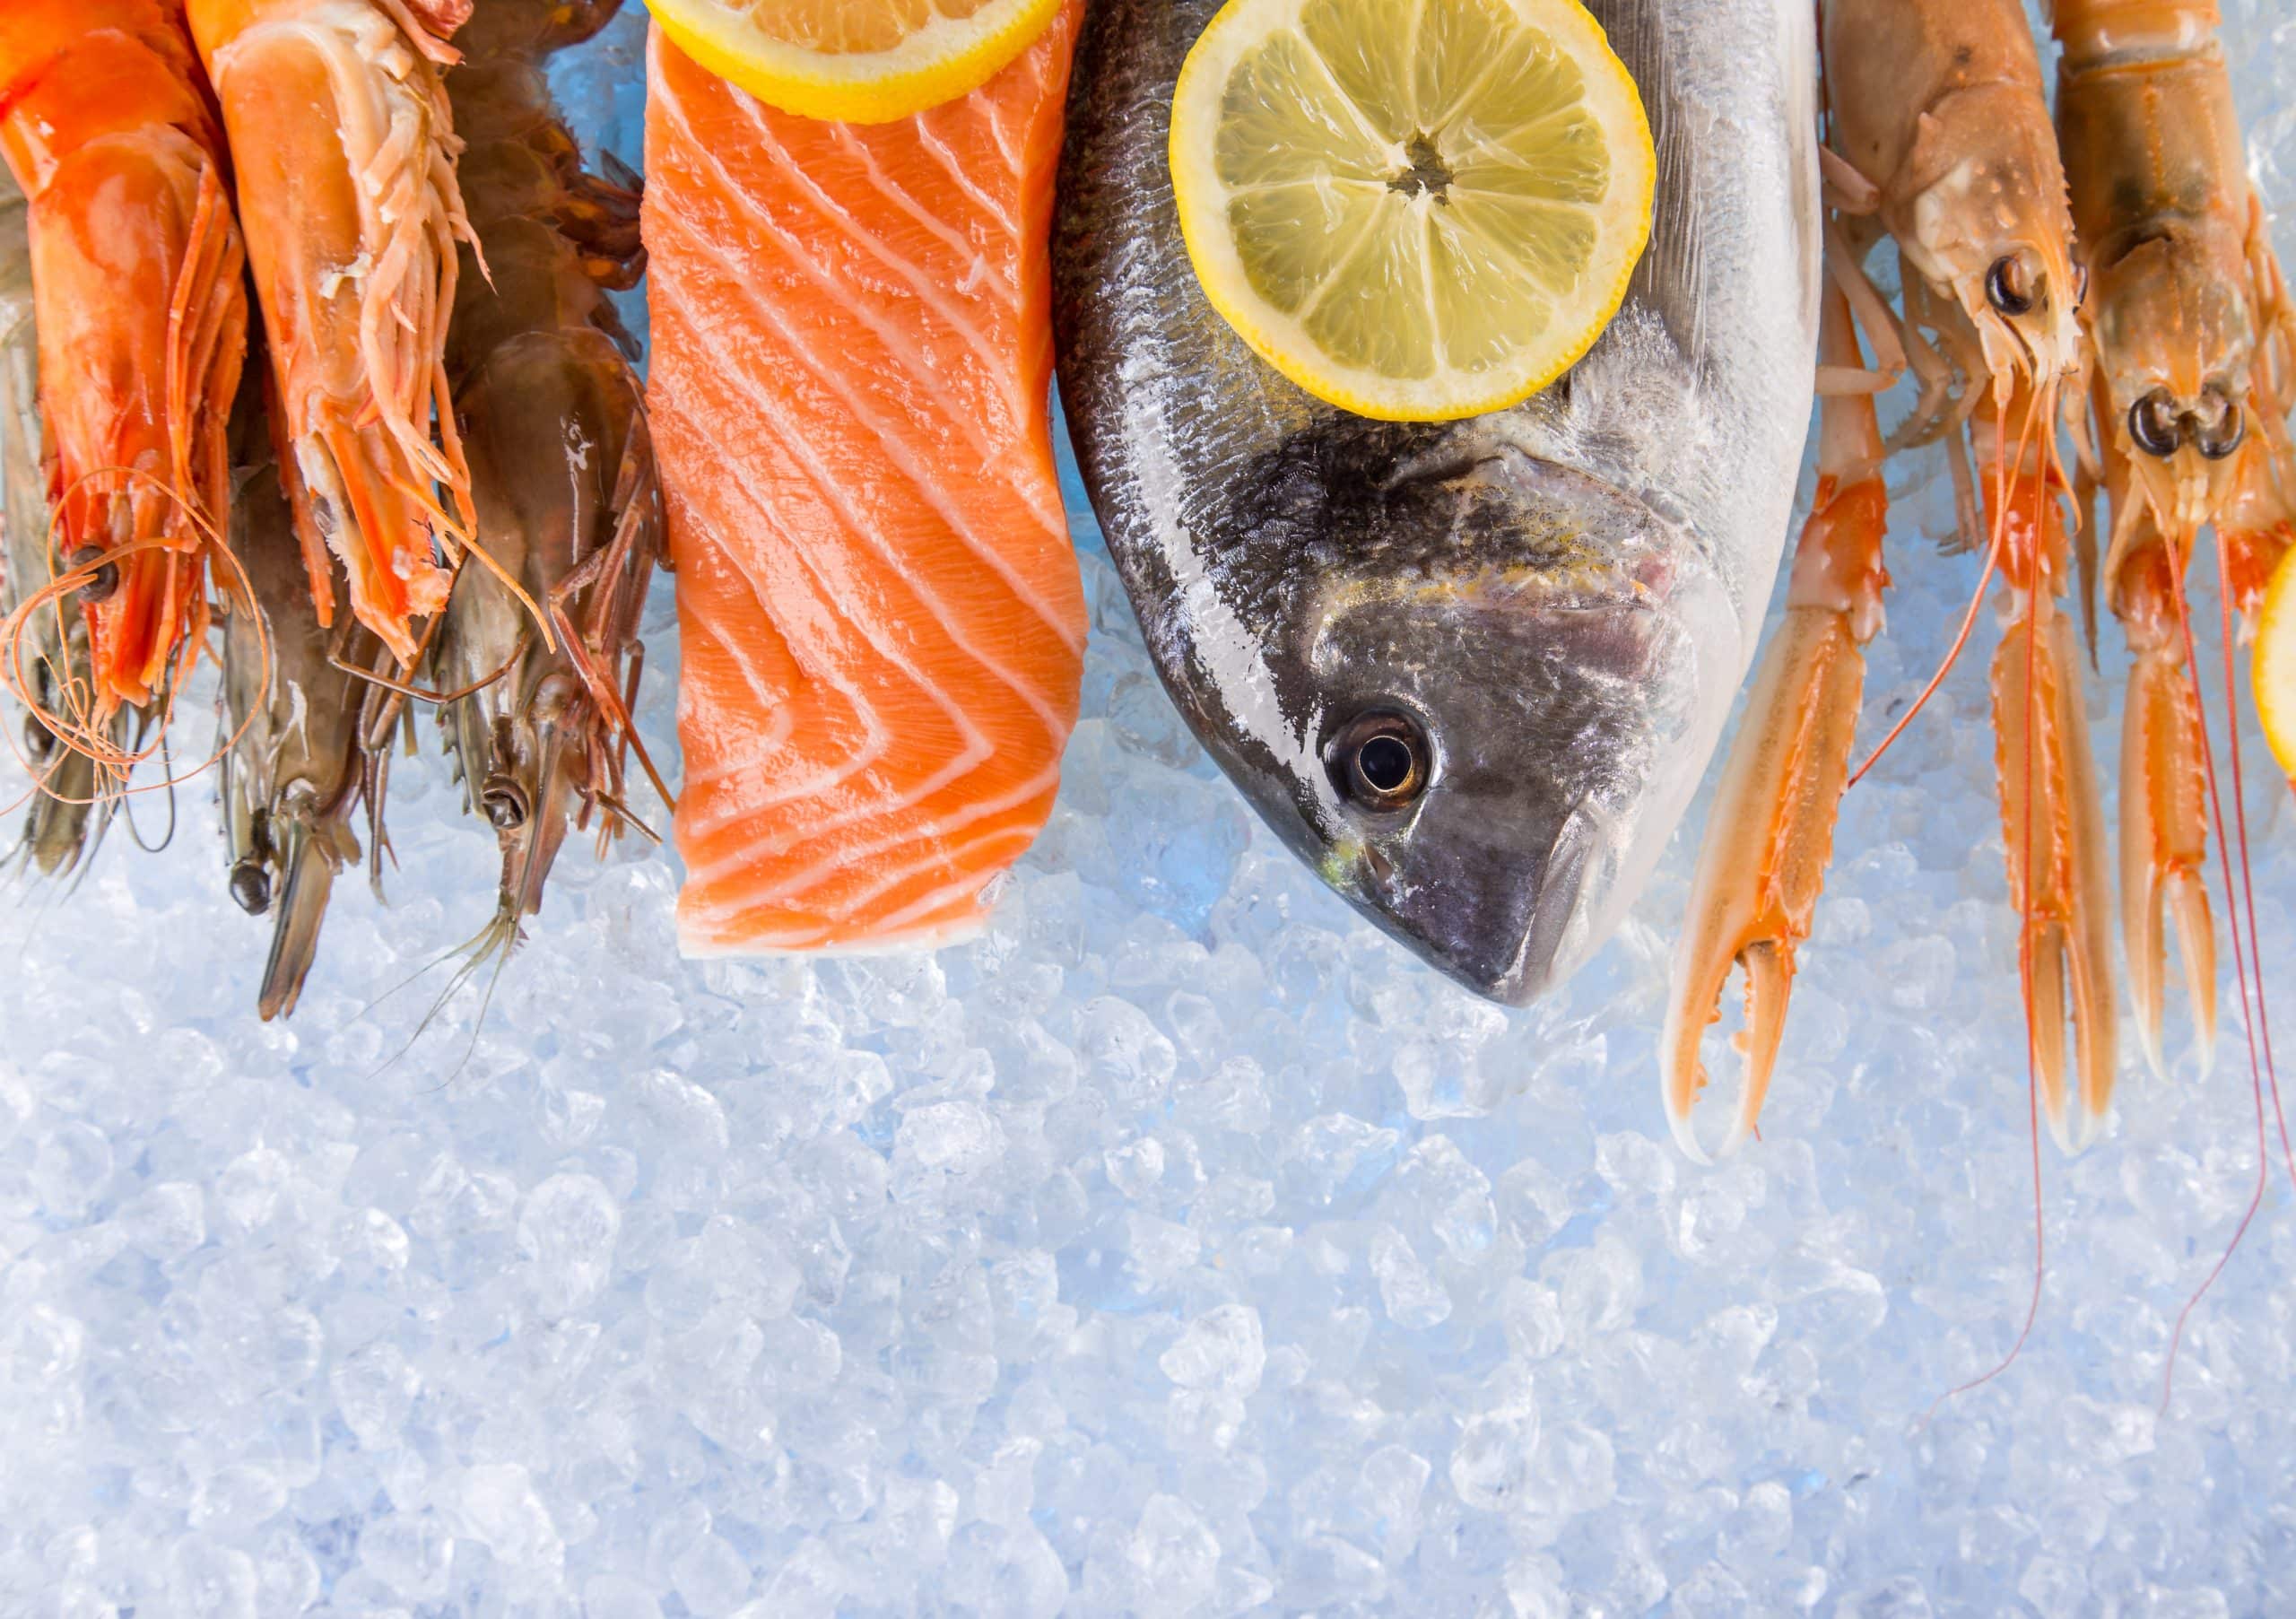 Mitos y verdades sobre el pescado congelado - Disanfrio